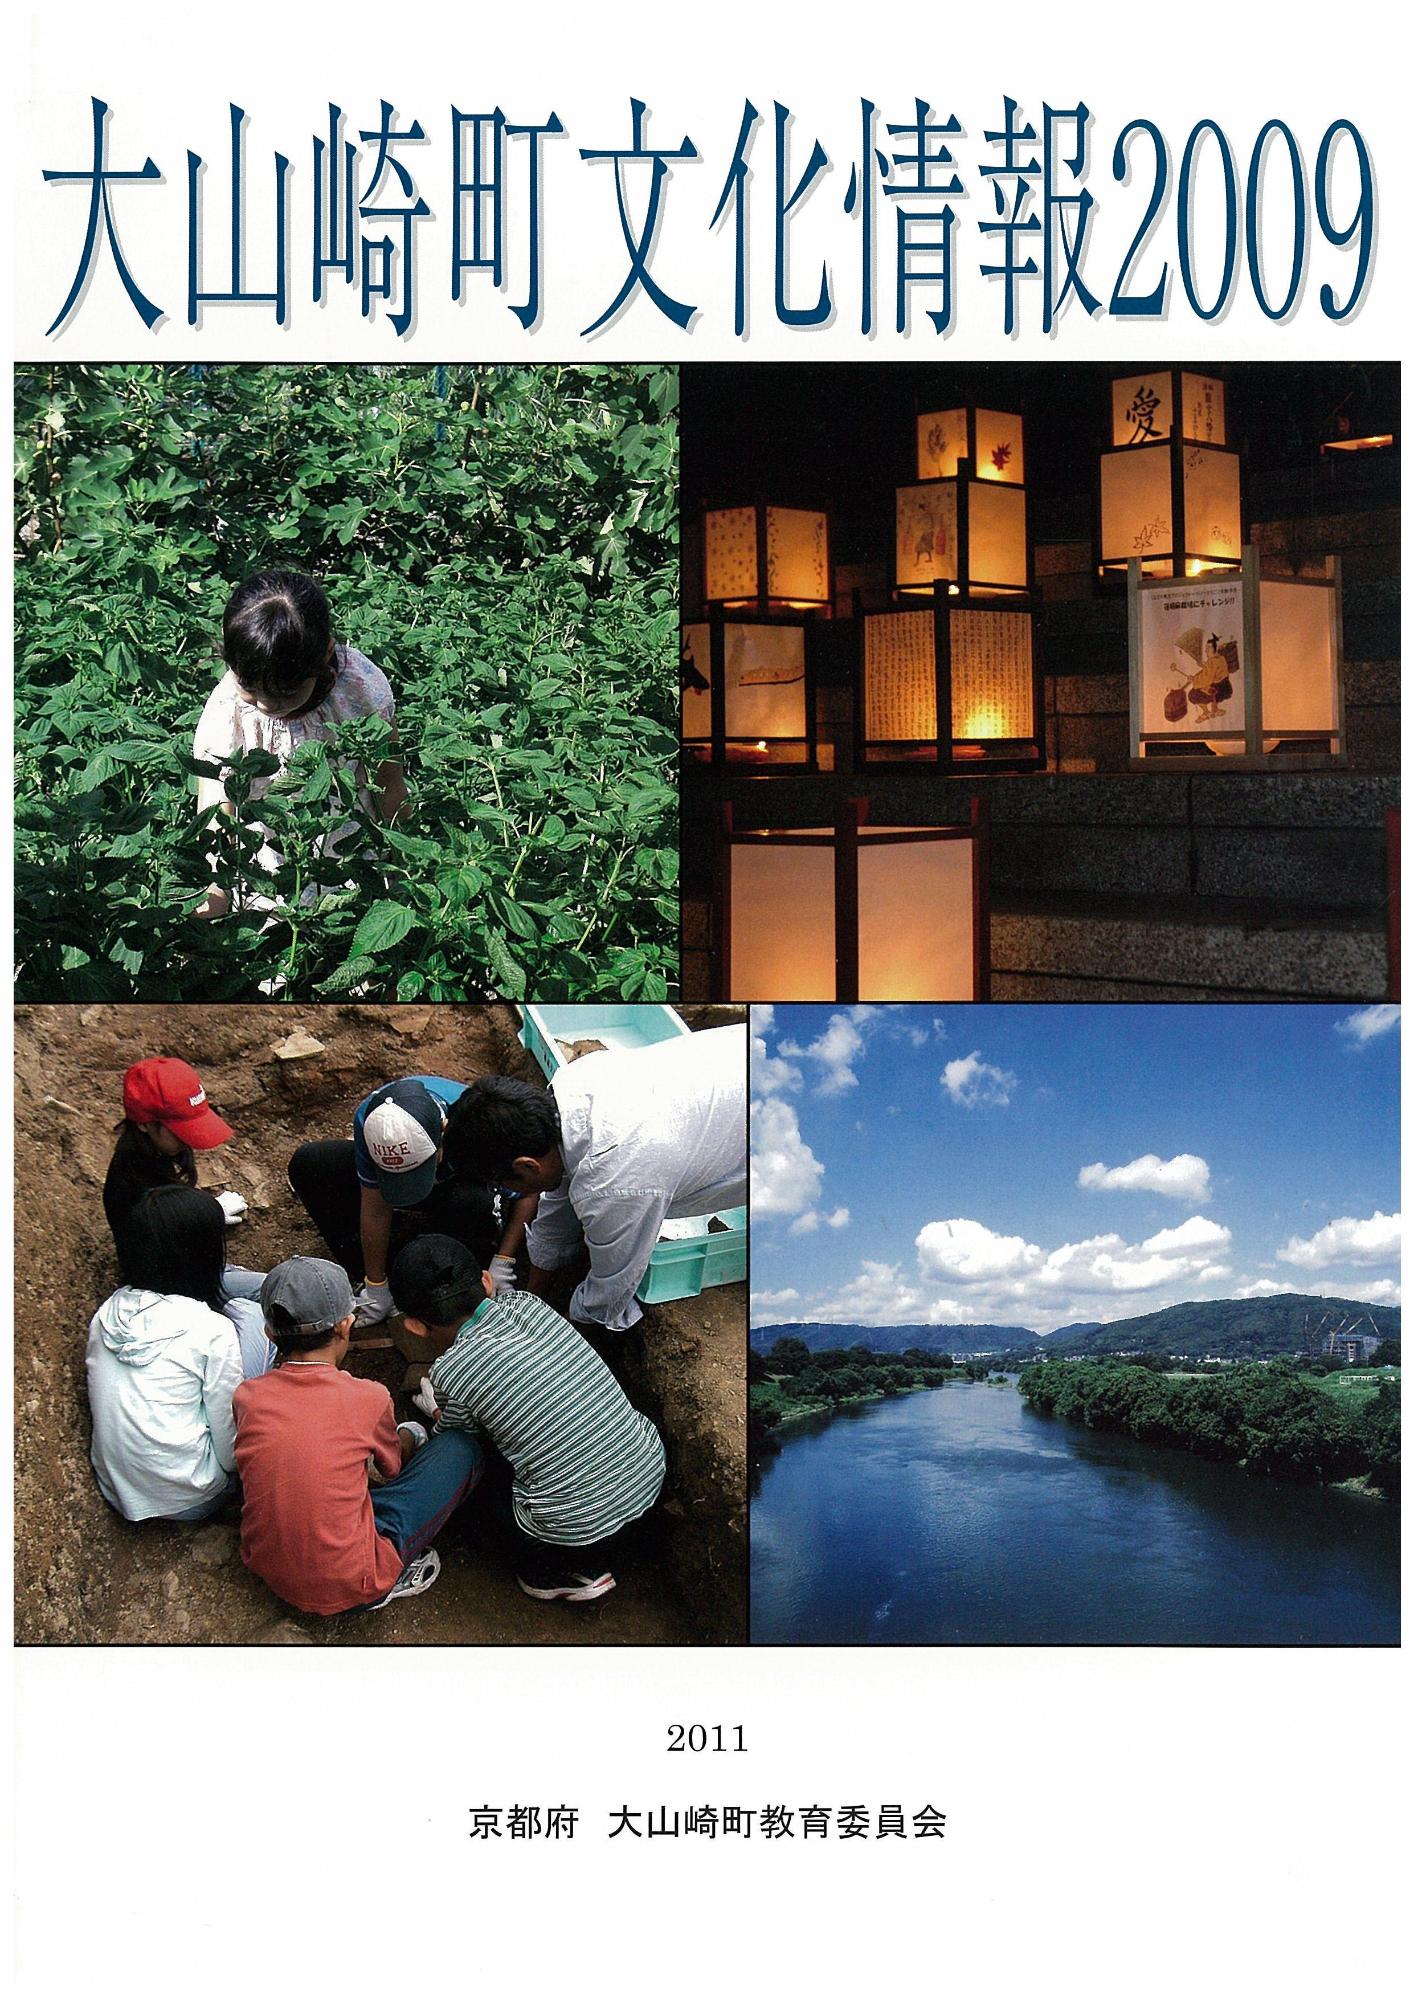 「大山崎町文化情報2009」(文化情報満載です！)